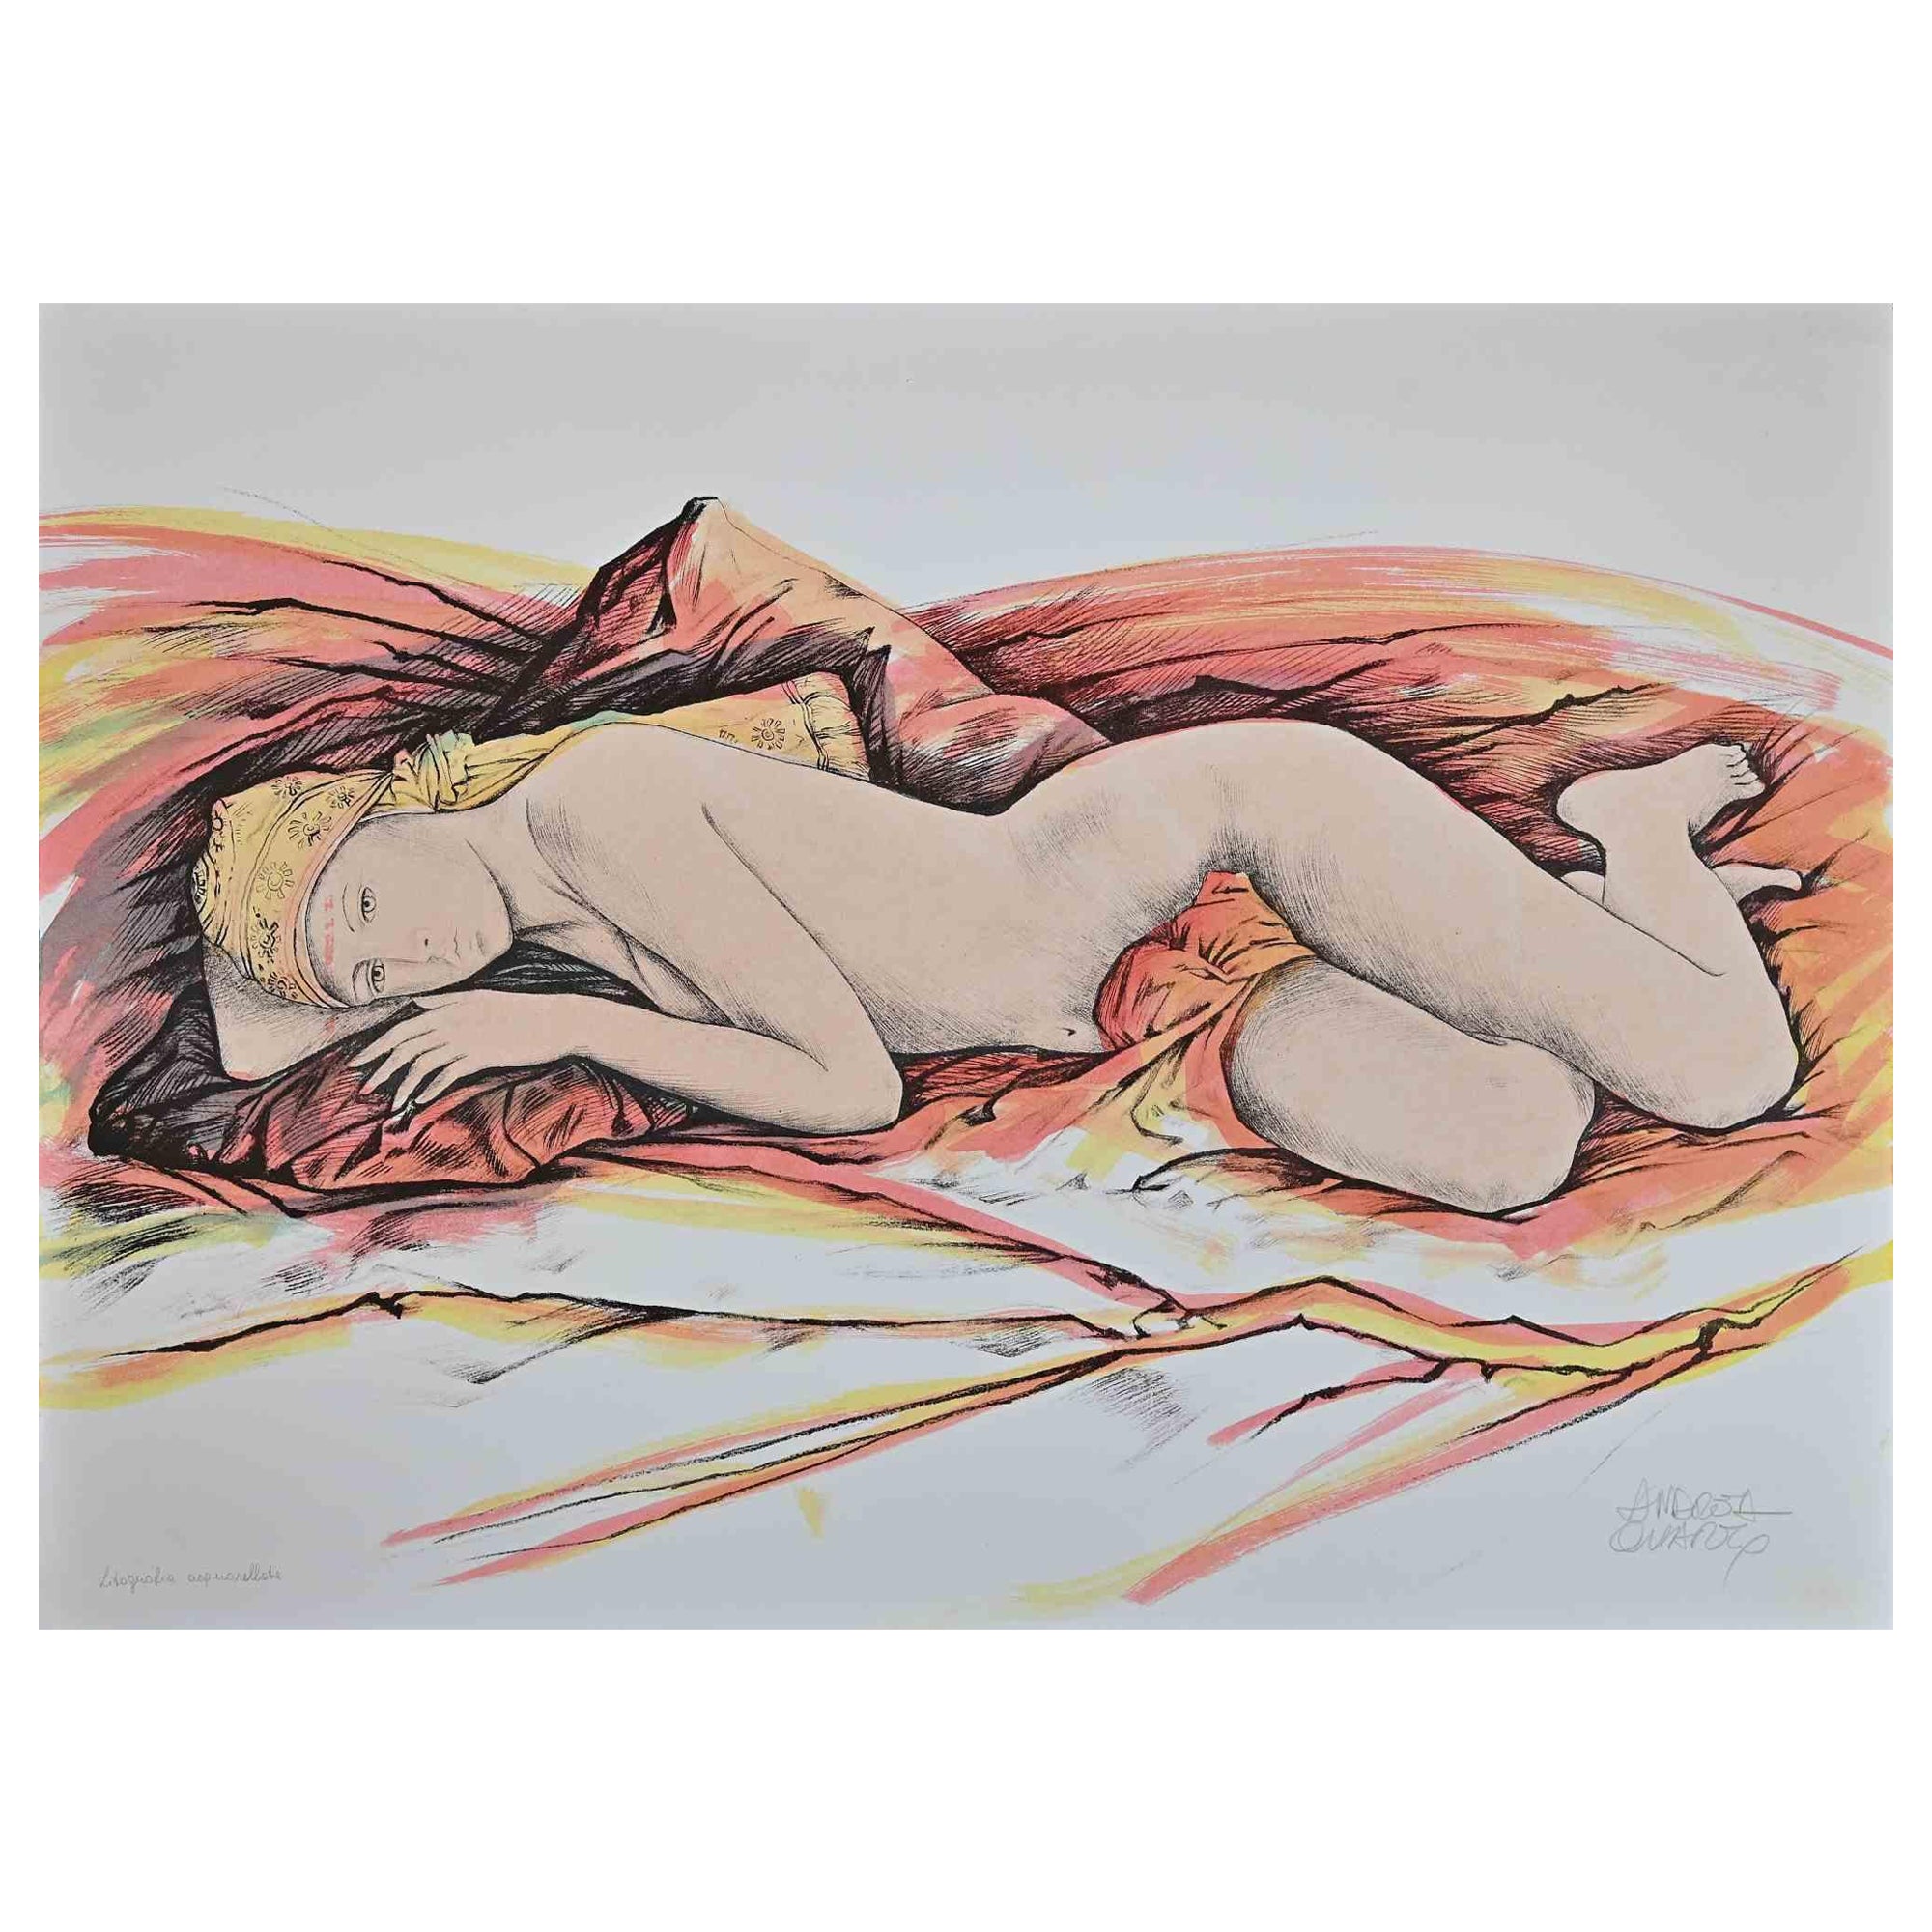 Andrea Quarto Figurative Print - Nude - Hand-Colored Lithograph by A. Quarto - 1985